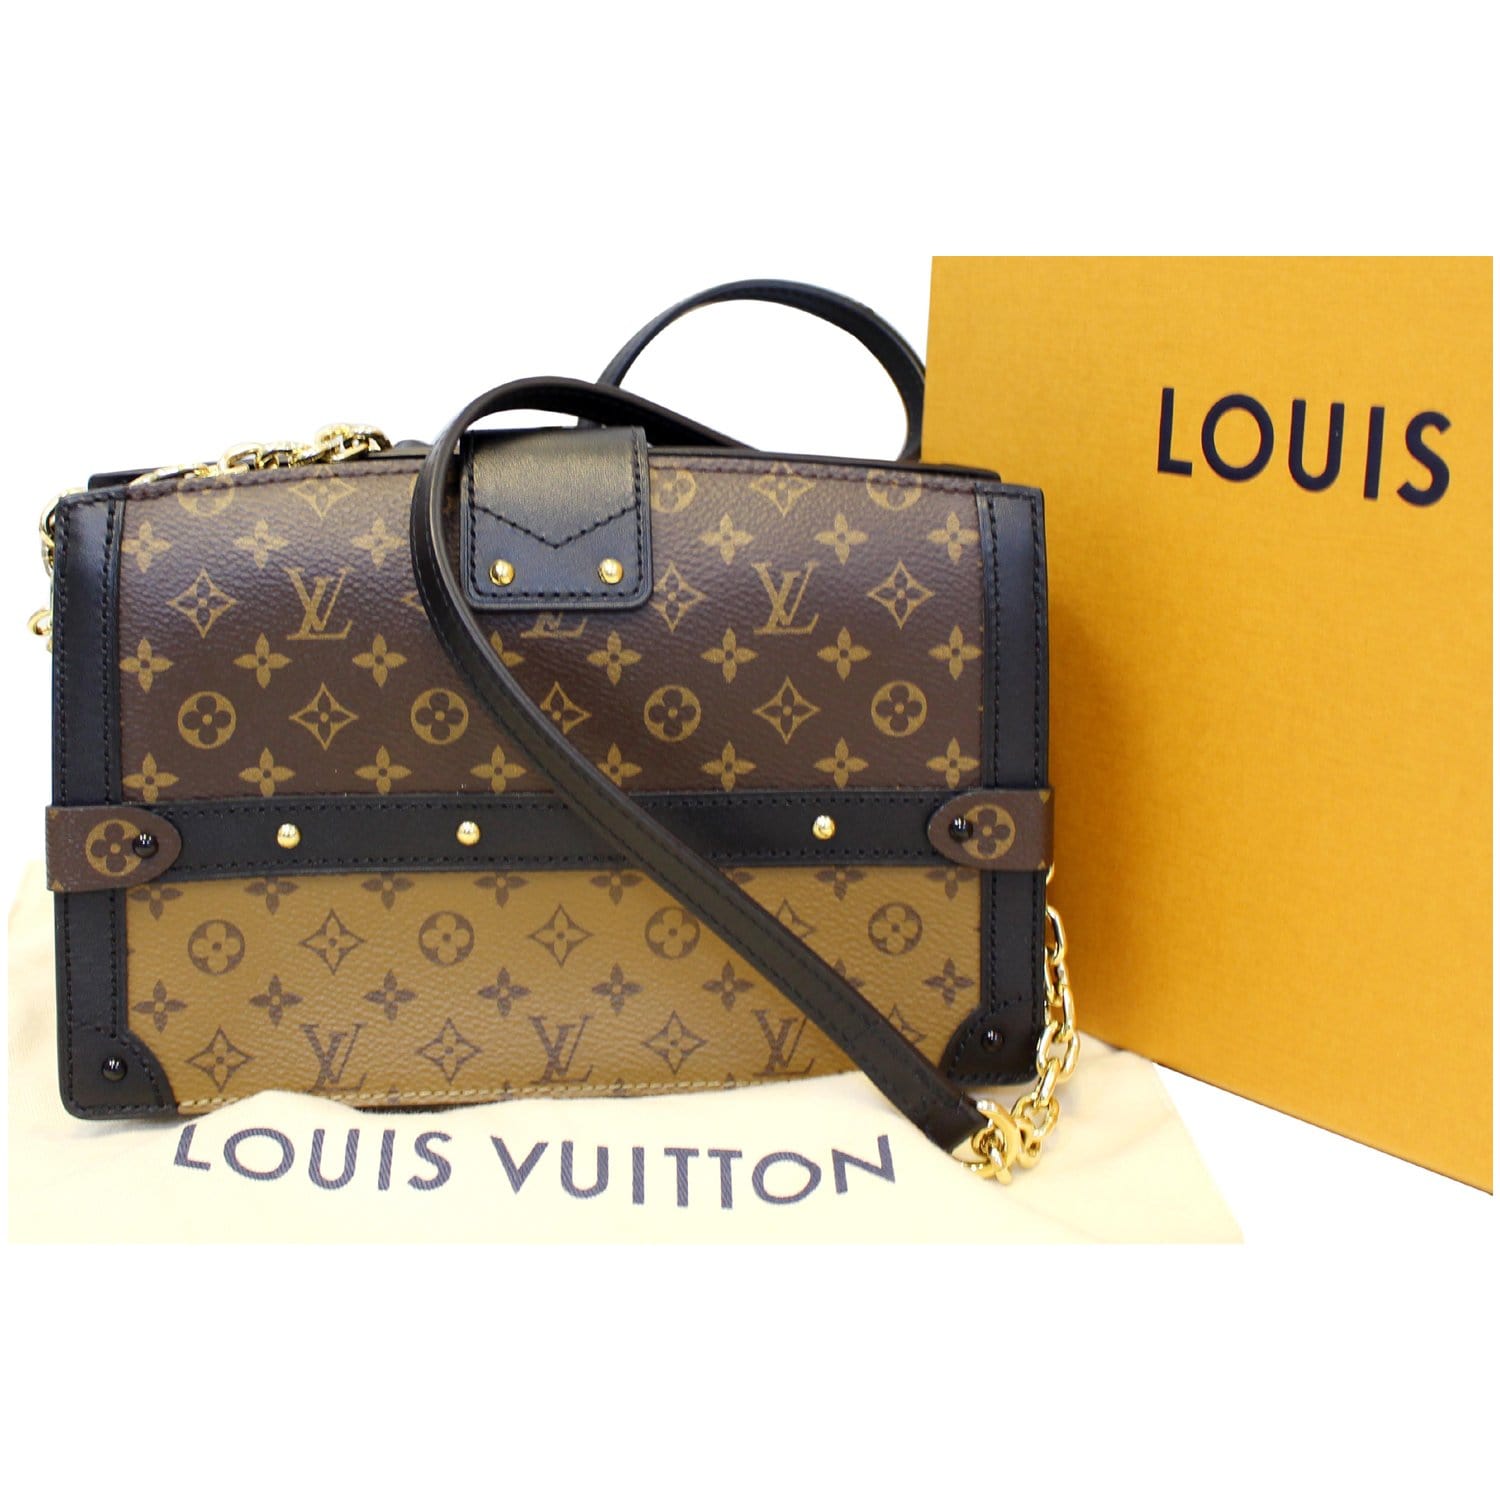 Louis Vuitton Trunk Clutch in Monogram